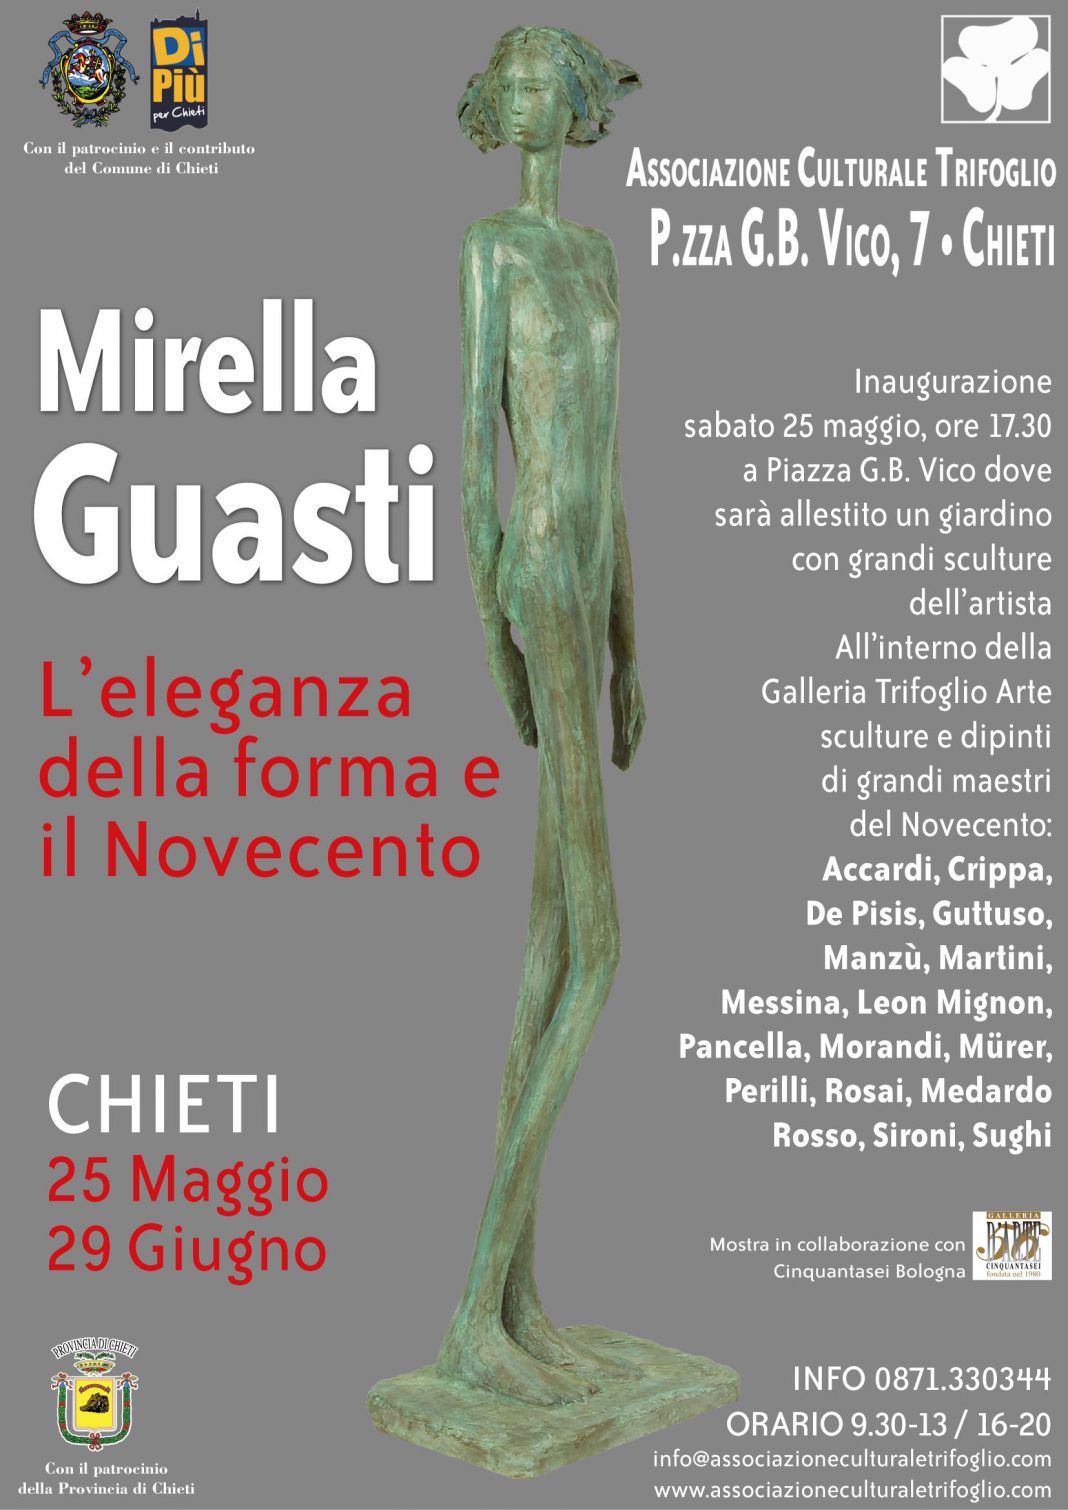 Mirella Guasti – L’eleganza della forma e il Novecentohttps://www.exibart.com/repository/media/eventi/2013/05/mirella-guasti-8211-l8217eleganza-della-forma-e-il-novecento-1068x1510.jpg